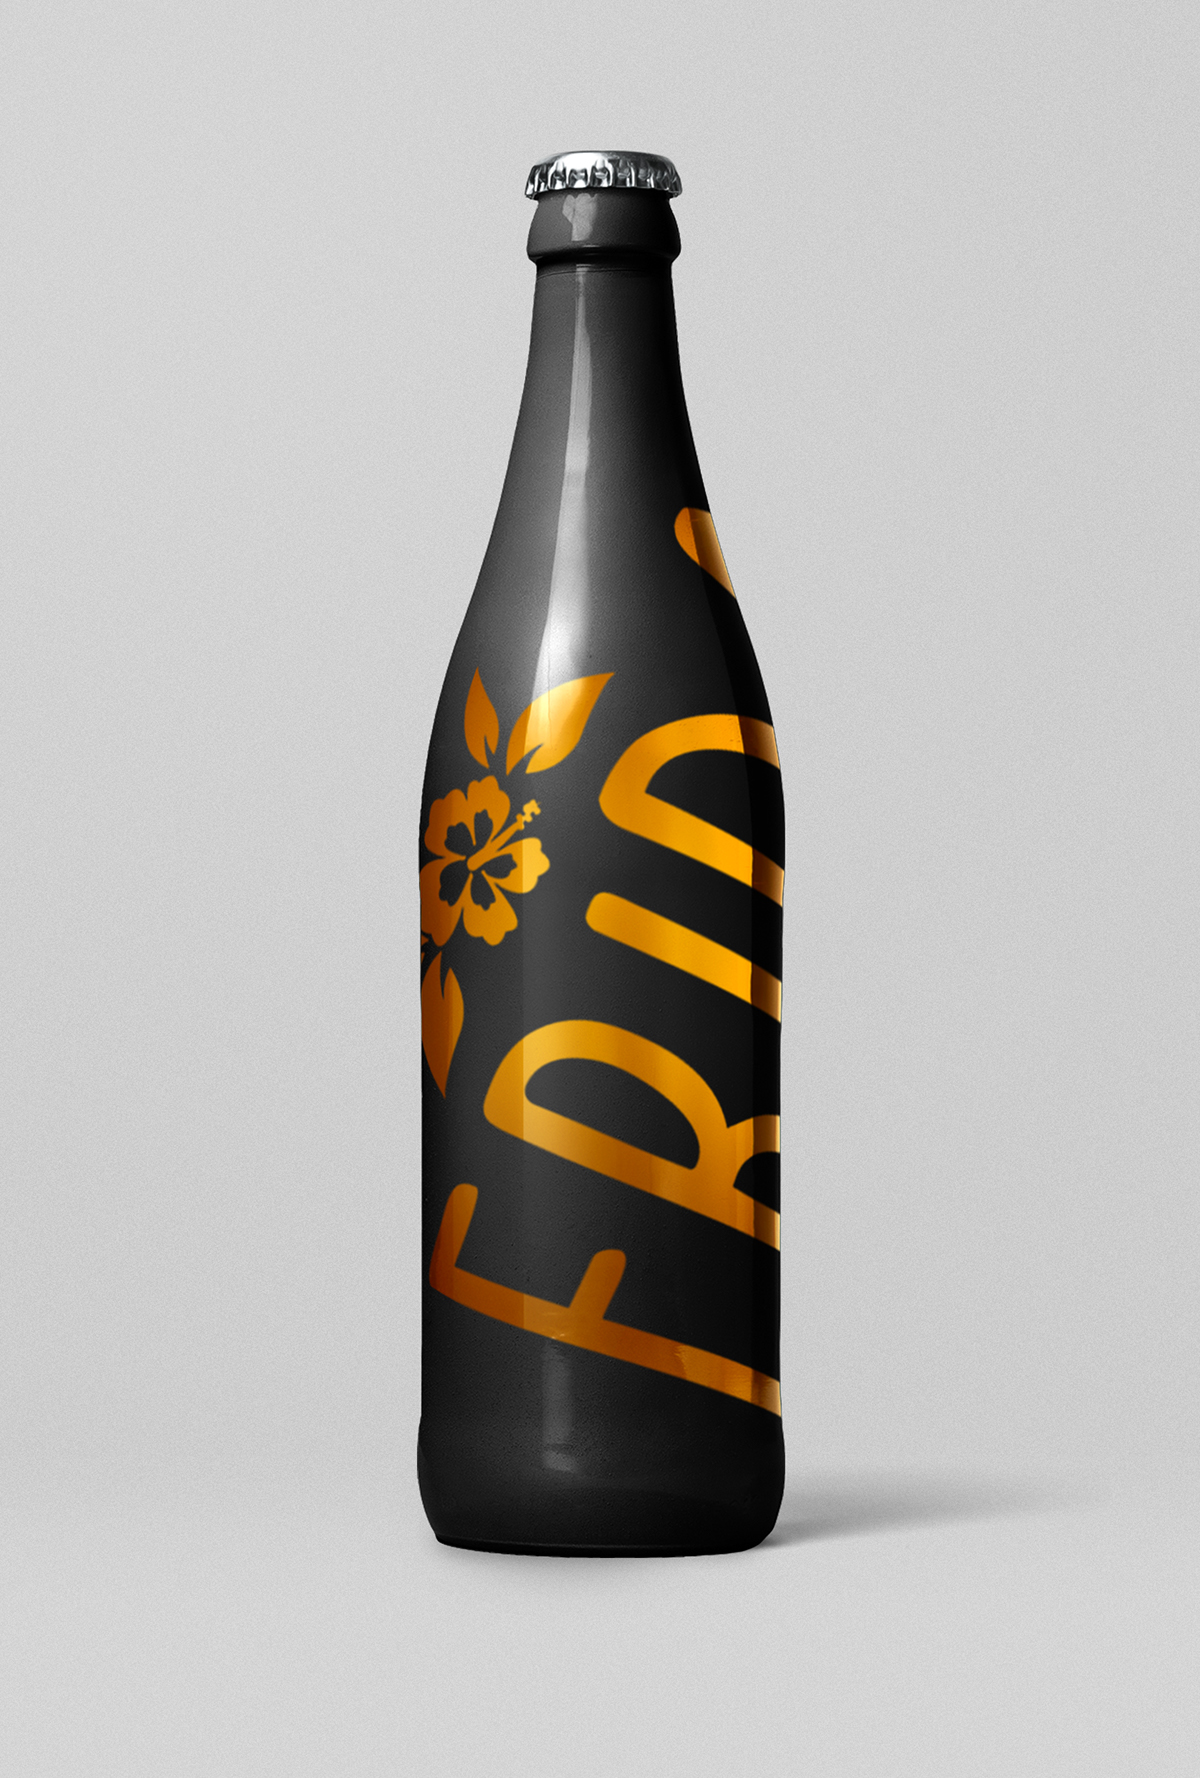 craft beer design package brand Mockup frida bar vector flower